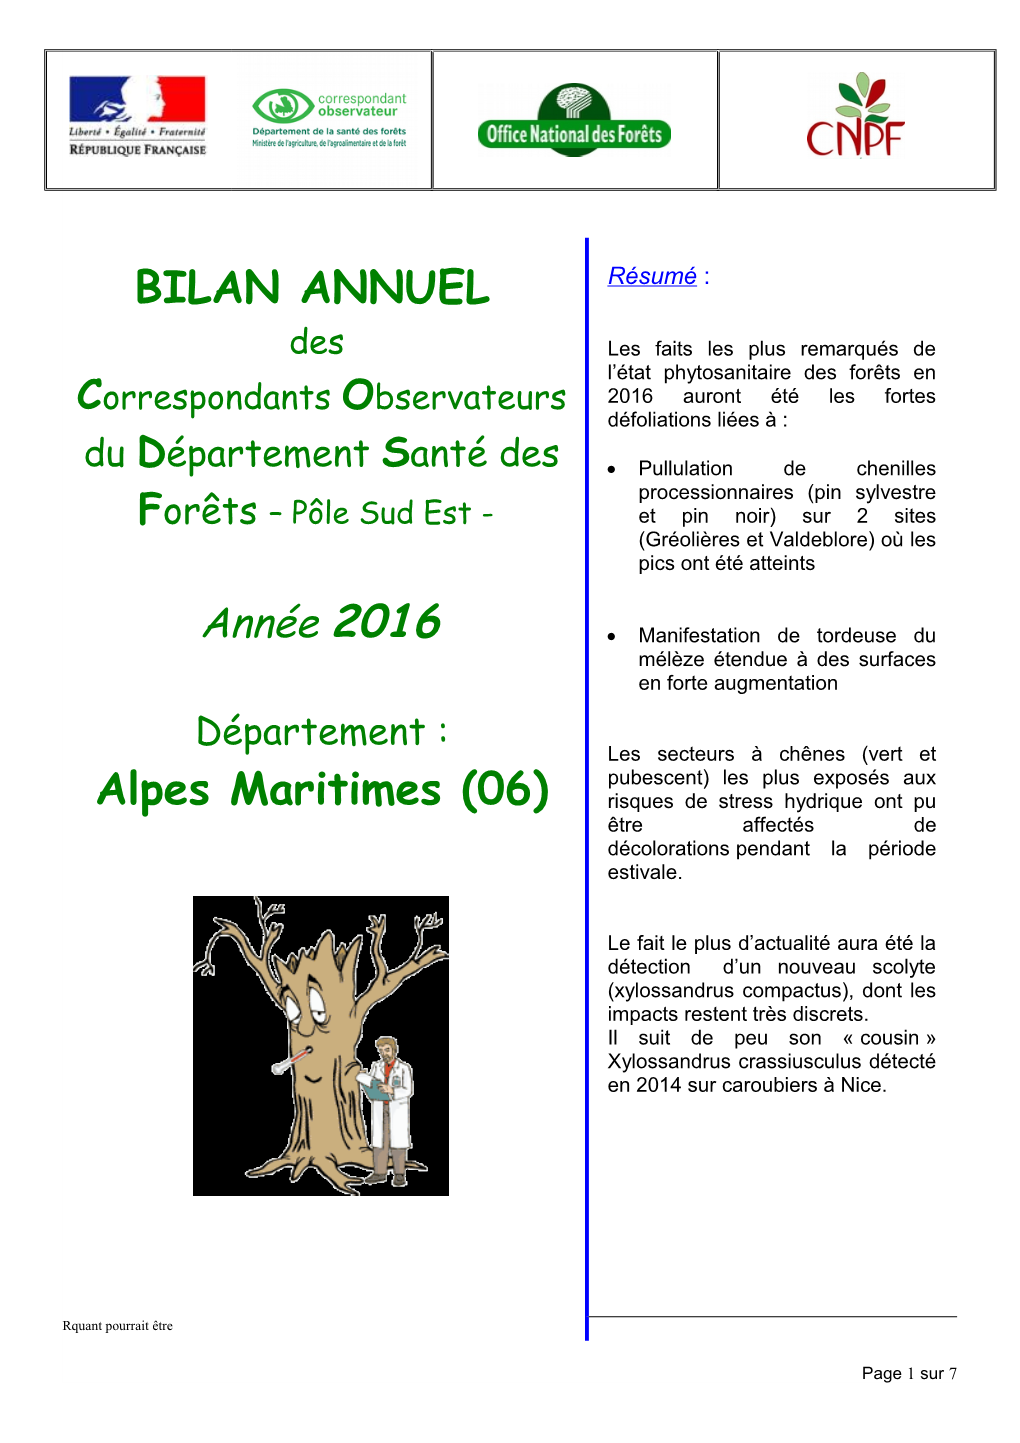 BILAN ANNUEL Alpes Maritimes